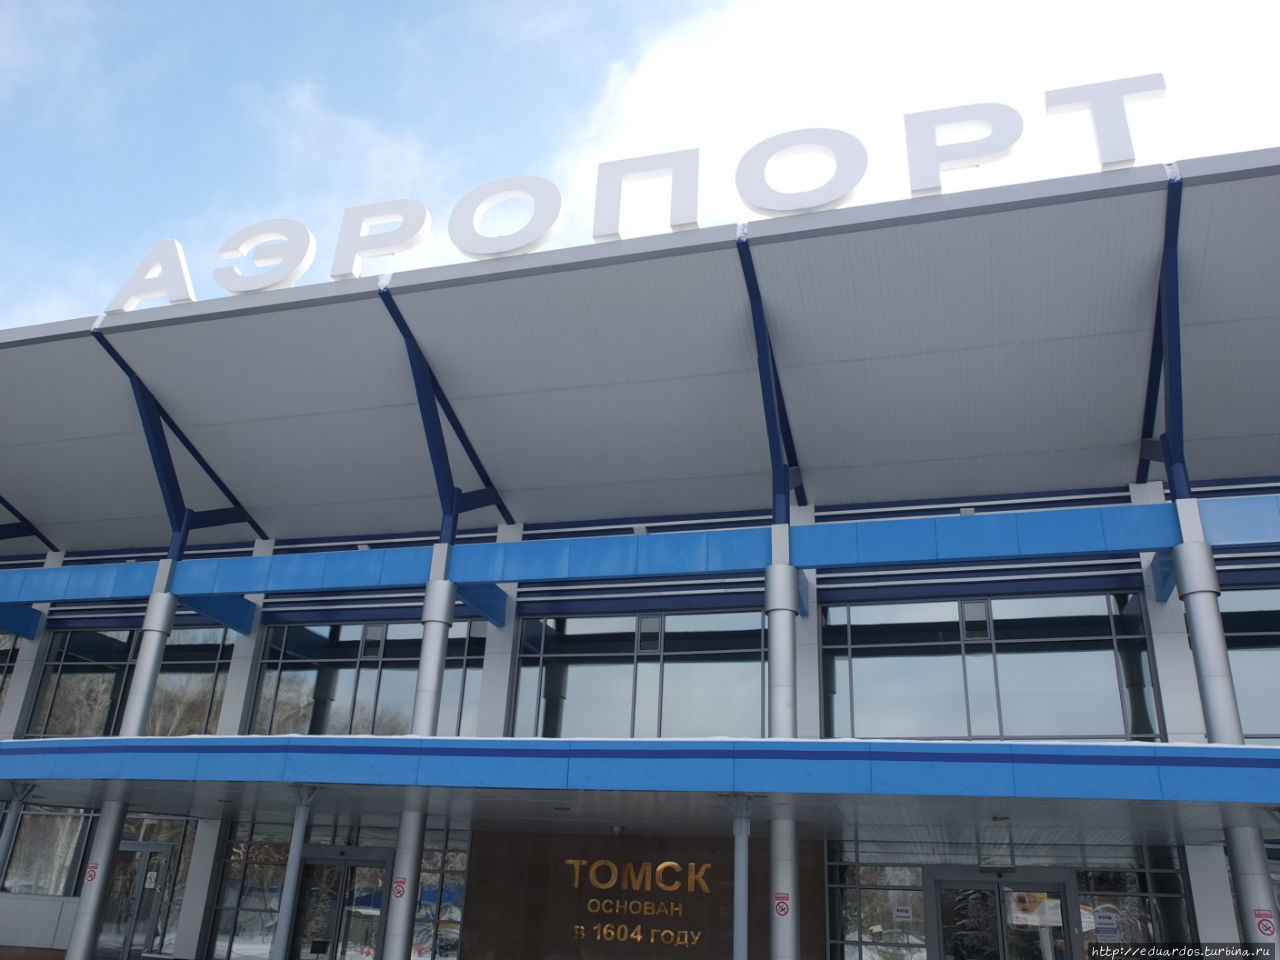 Очень порадовал аккуратный, чистый аэропорт! Томск, Россия